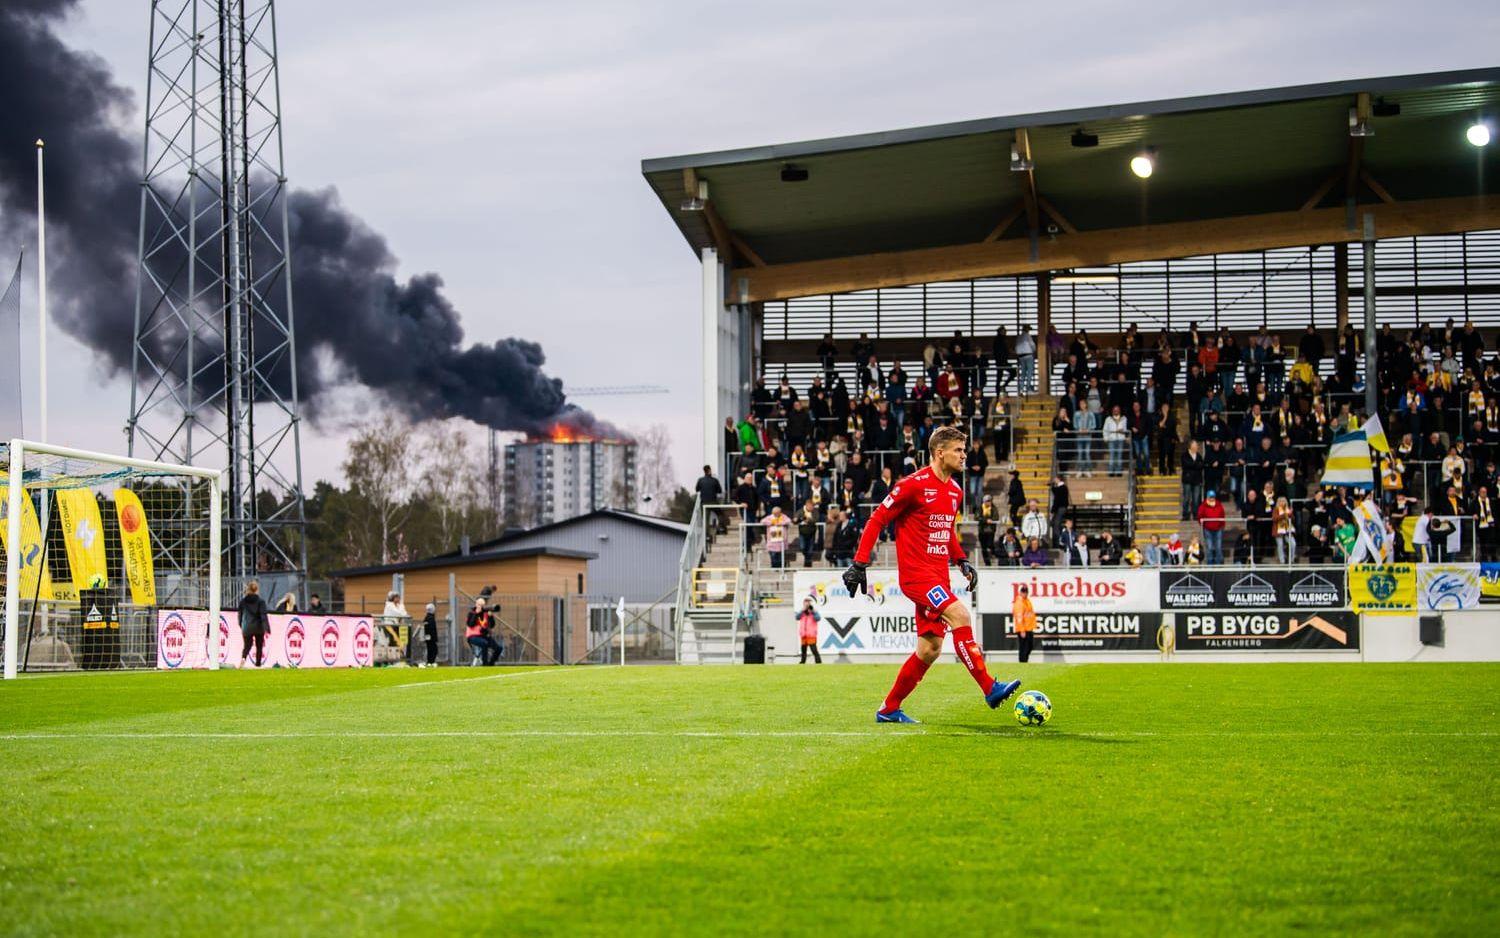 Ett hus brinner intill fotbollsmatchen i Allsvenskan mellan Falkenberg och Sirius den 24 april 2019 i Falkenberg.